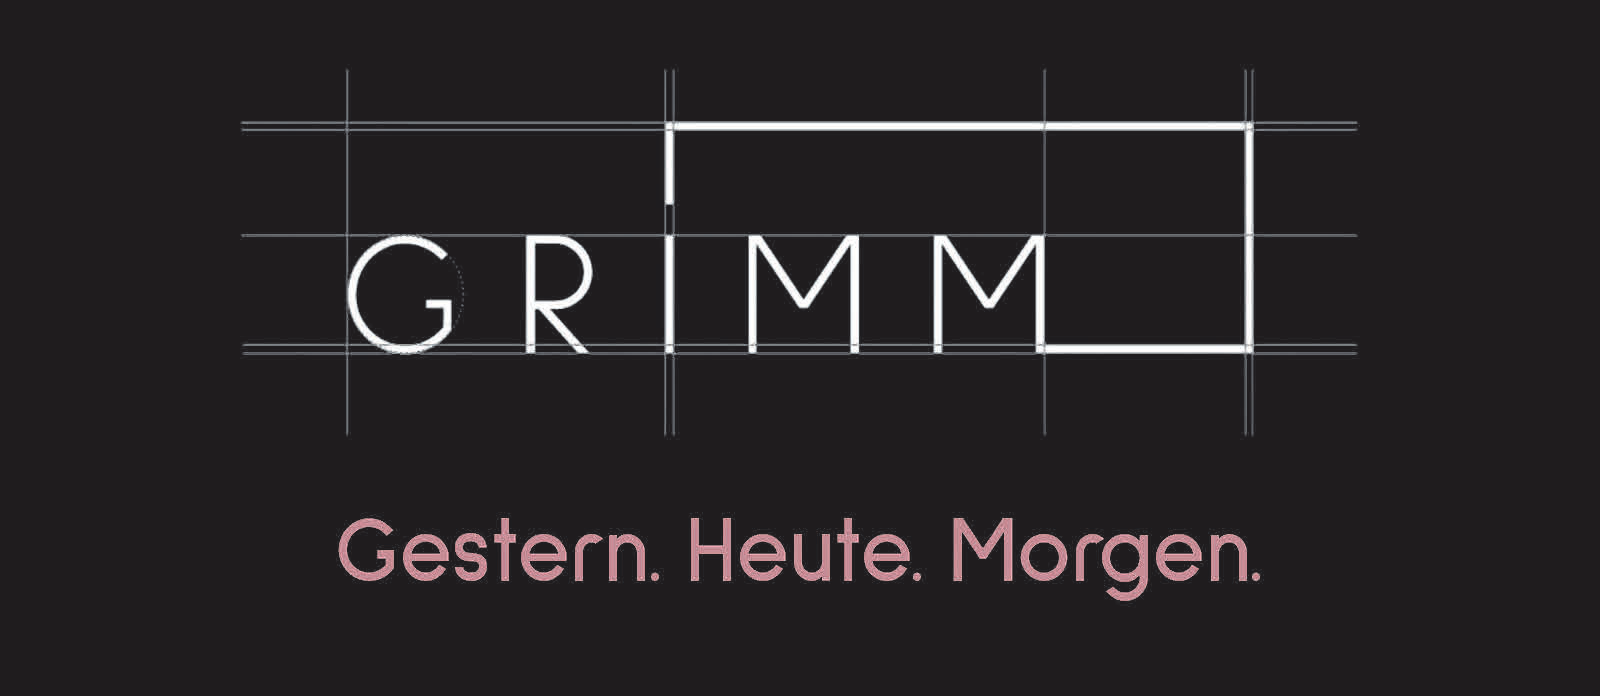 Familien-Bauunternehmen Grimm in Maselheim: Wandel und Transformation